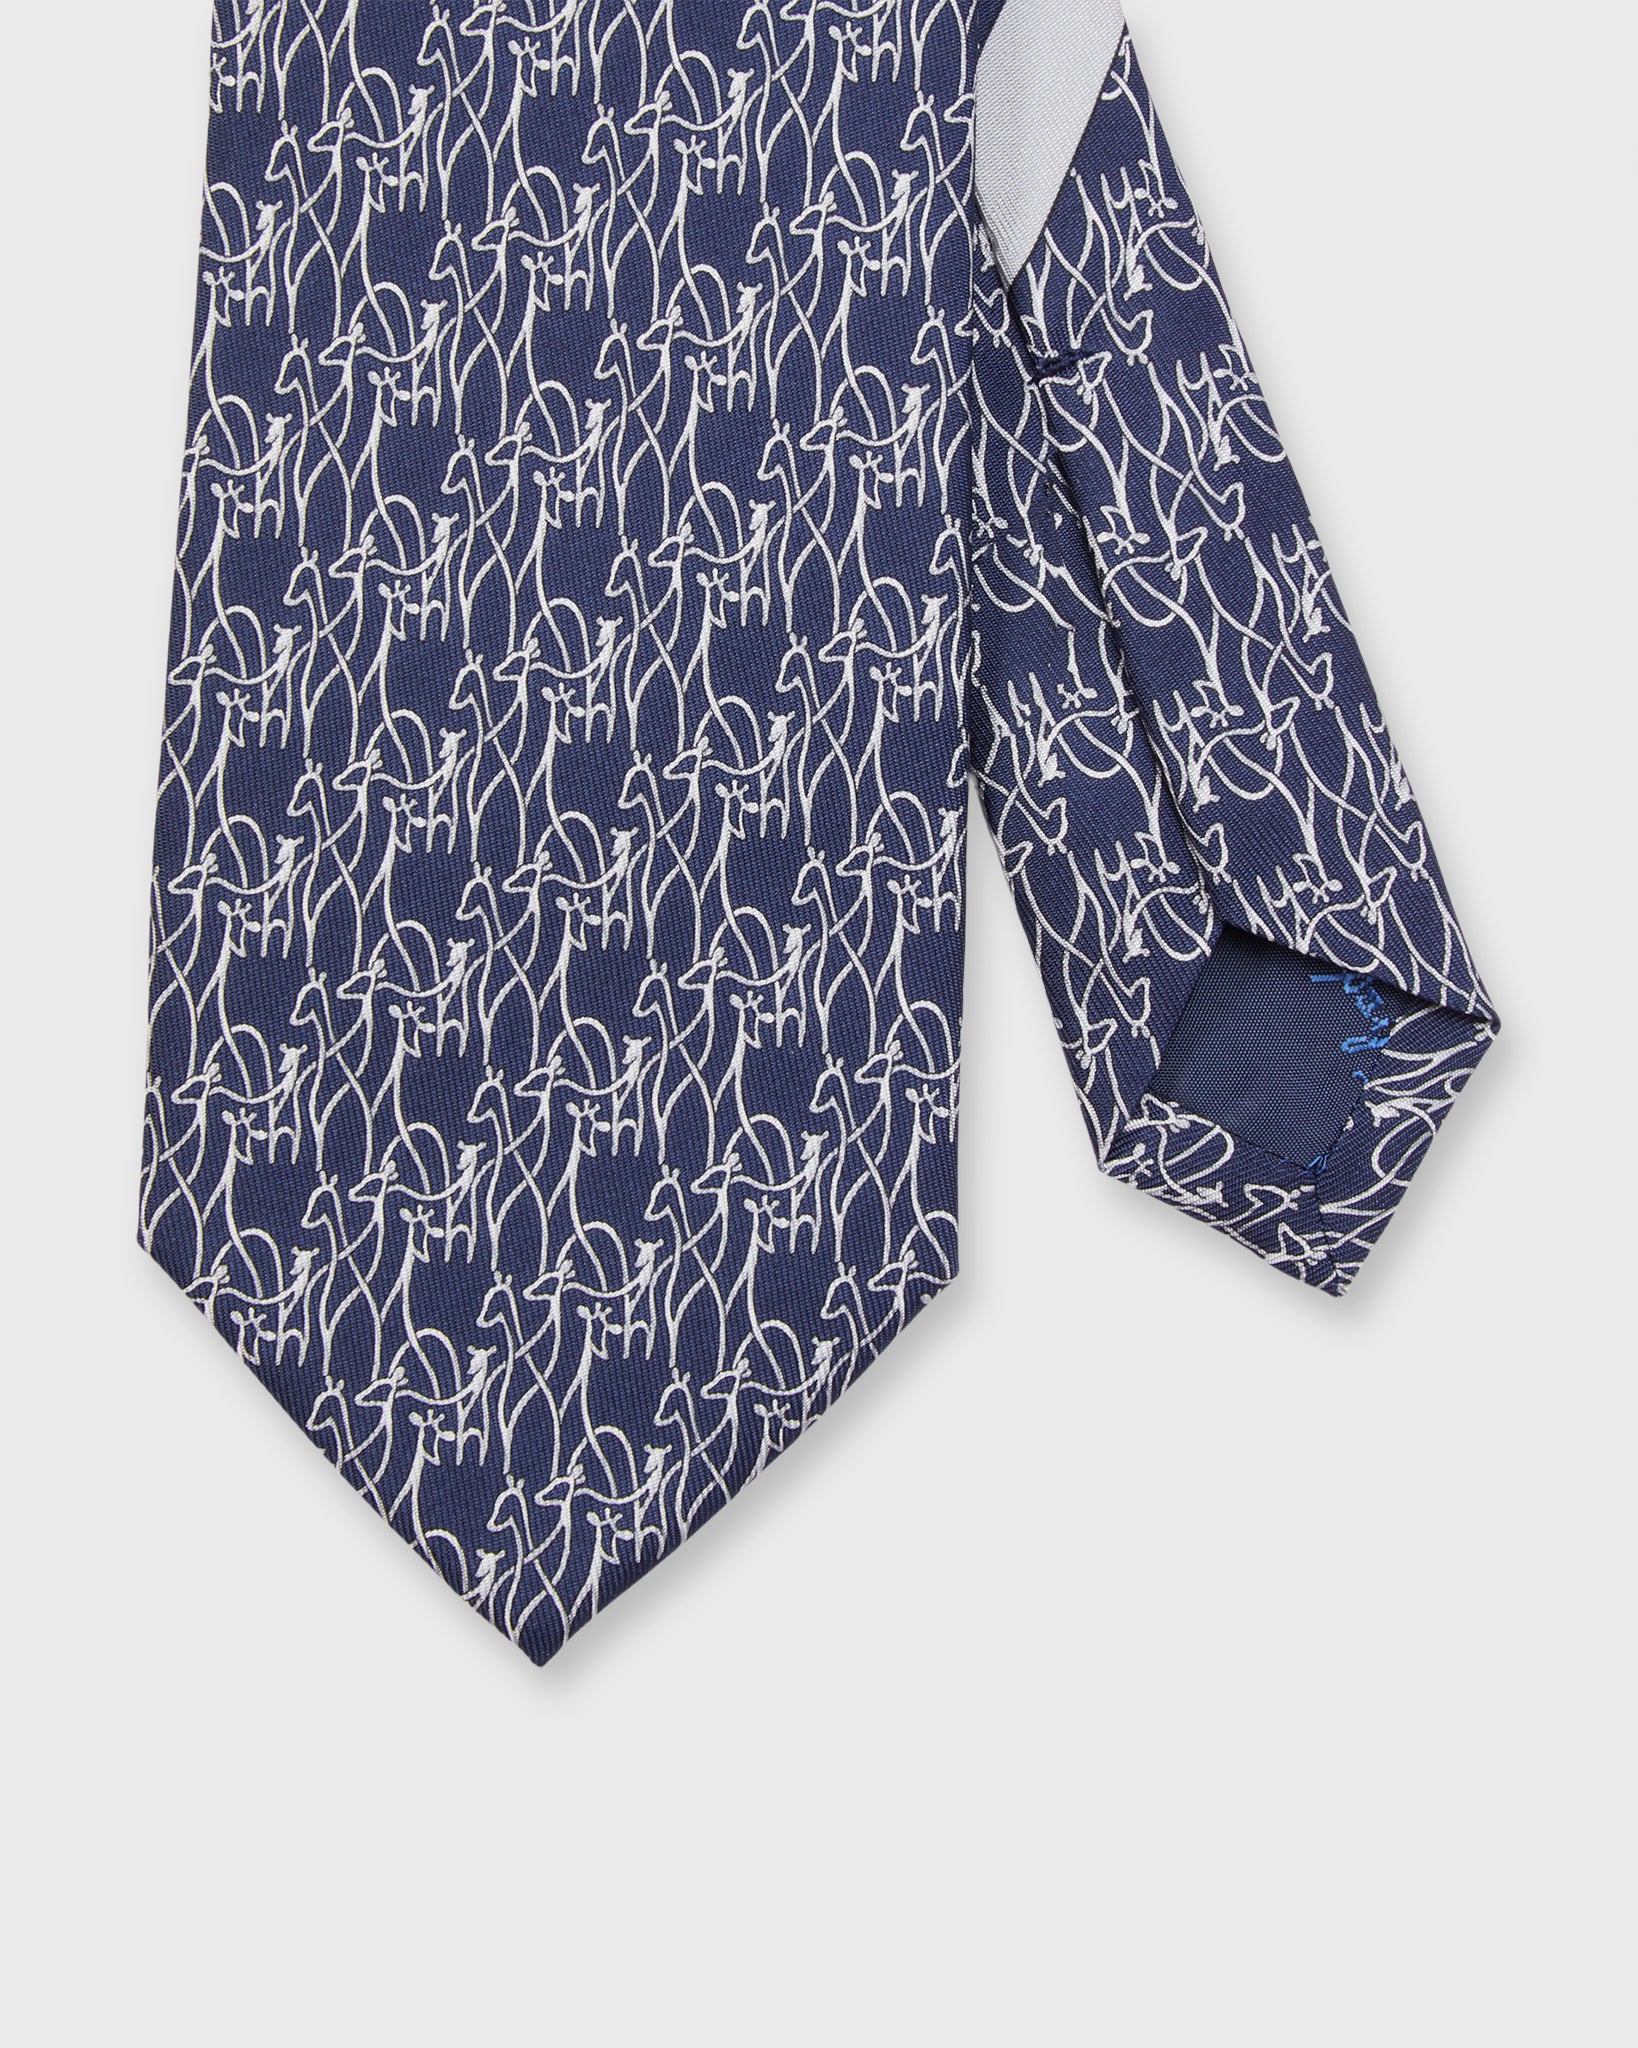 Silk Print Tie in Navy Giraffes